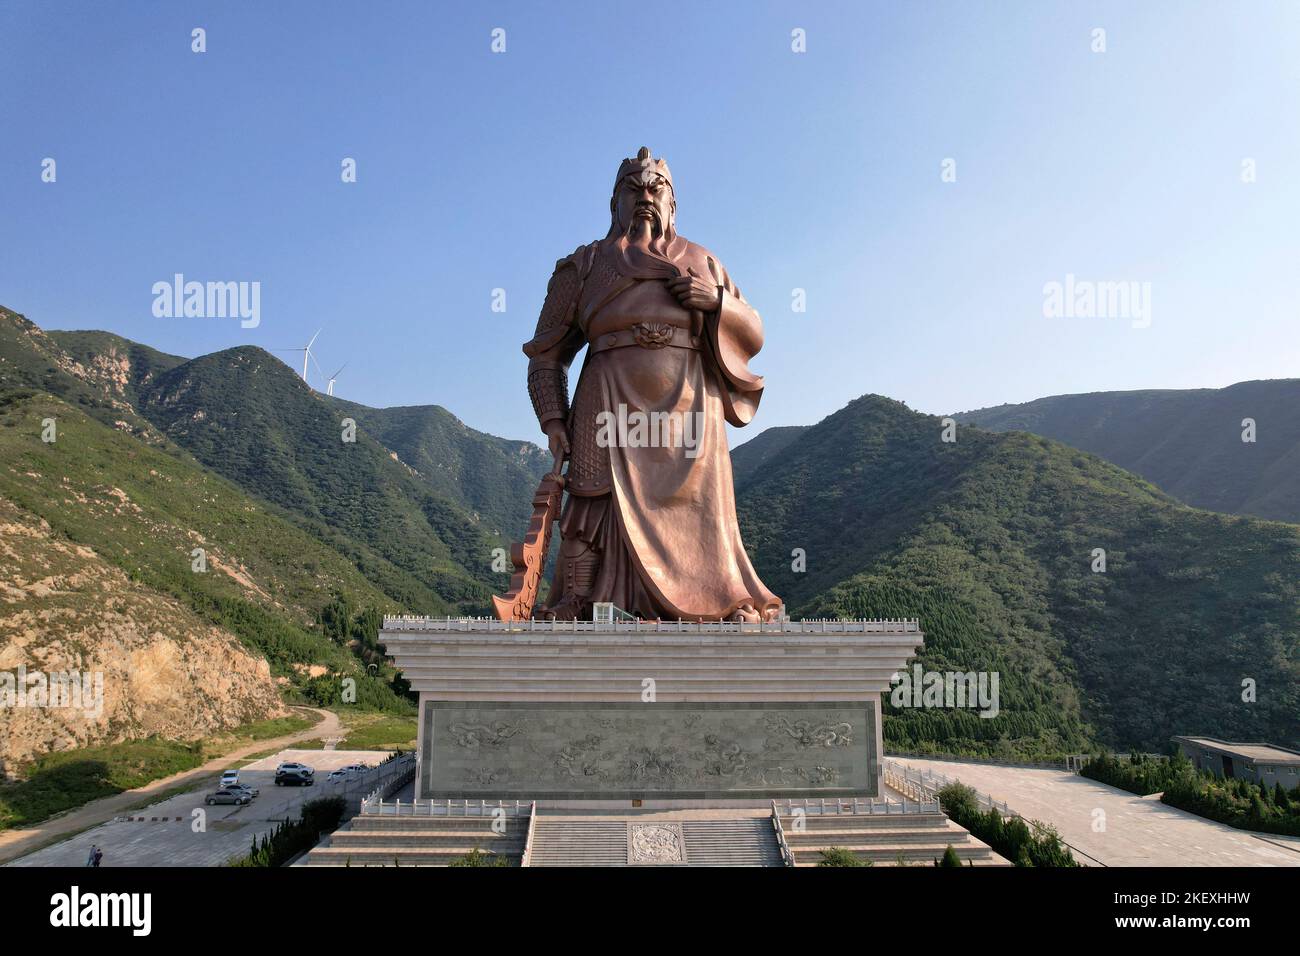 YUNCHENG, CHINA - 11. SEPTEMBER 2022 - (DATEI) ein Luftfoto zeigt die weltweit höchste Bronzestatue von Guan Gong in Yuncheng, Provinz Shanxi, China Stockfoto